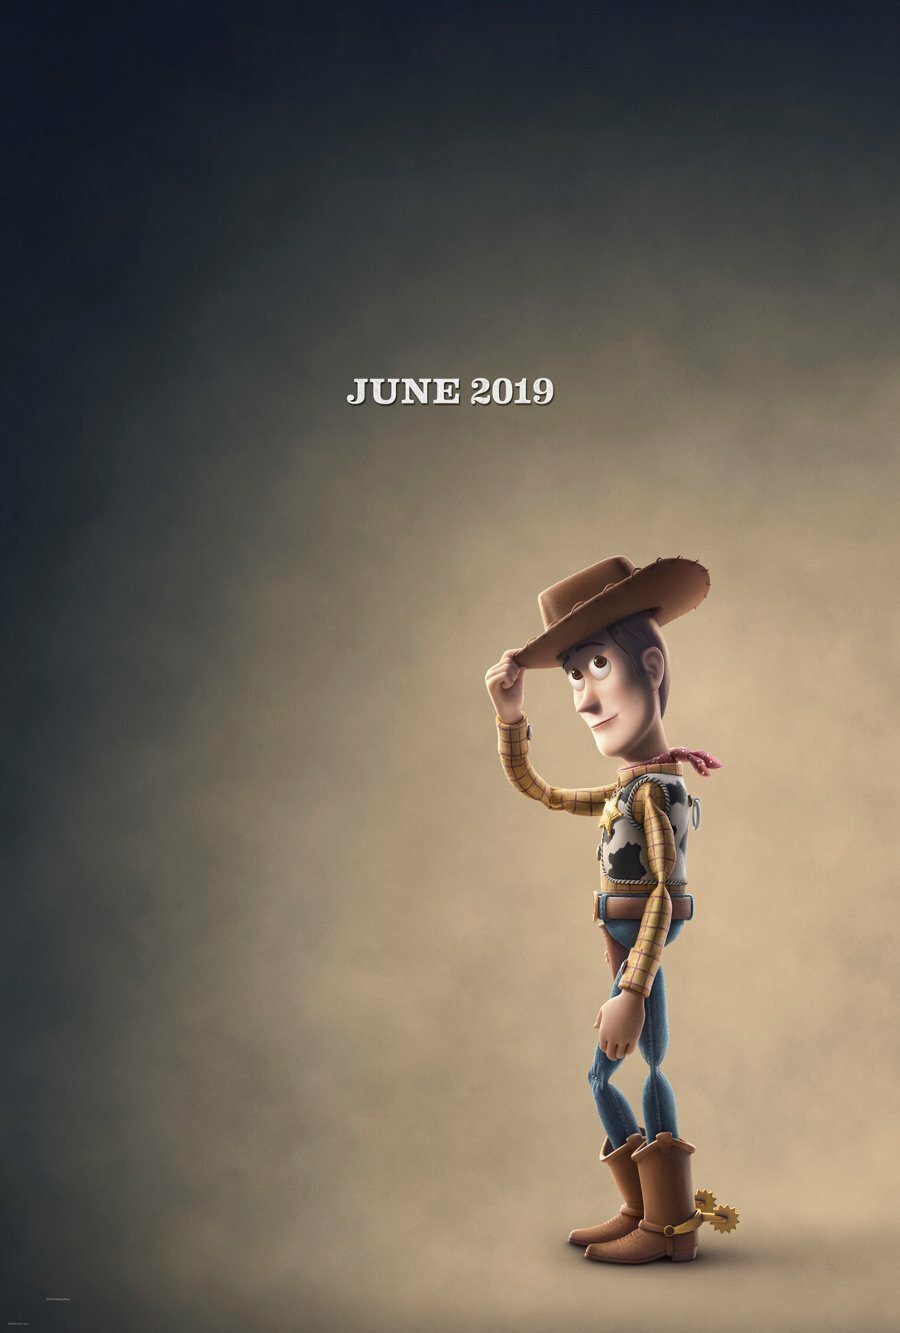 Woody ci saluta toccandosi il cappello